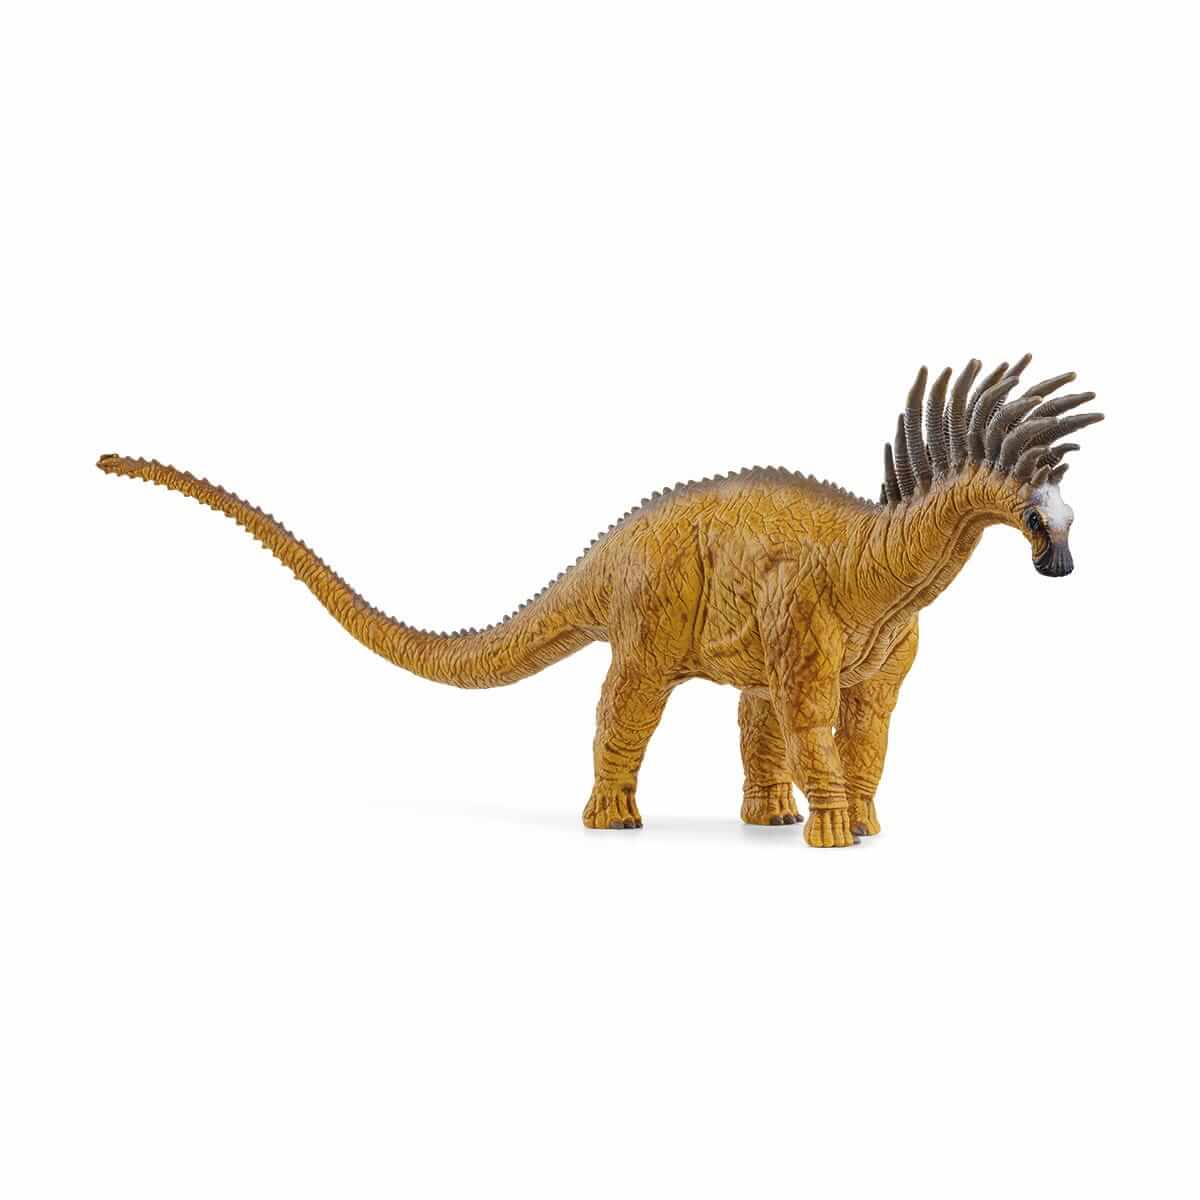 Schleich Dinosaurs Bajadasaurus Figure